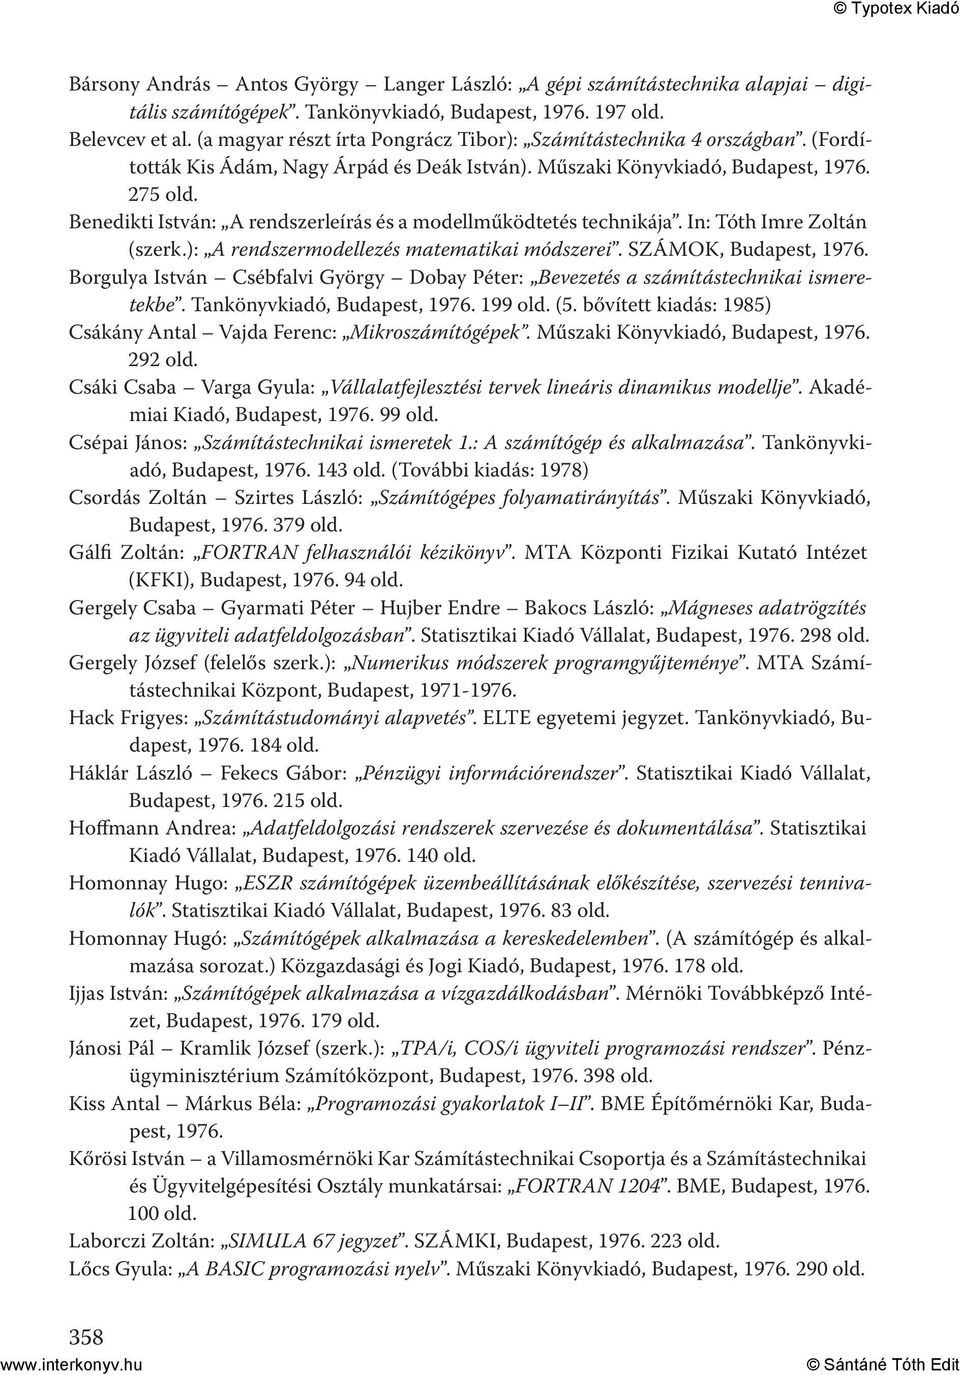 275 Benedikti István: A rendszerleírás és a modellműködtetés technikája. In: Tóth Imre Zoltán (szerk.): A rendszermodellezés matematikai módszerei. SZÁMOK, Budapest, 1976.